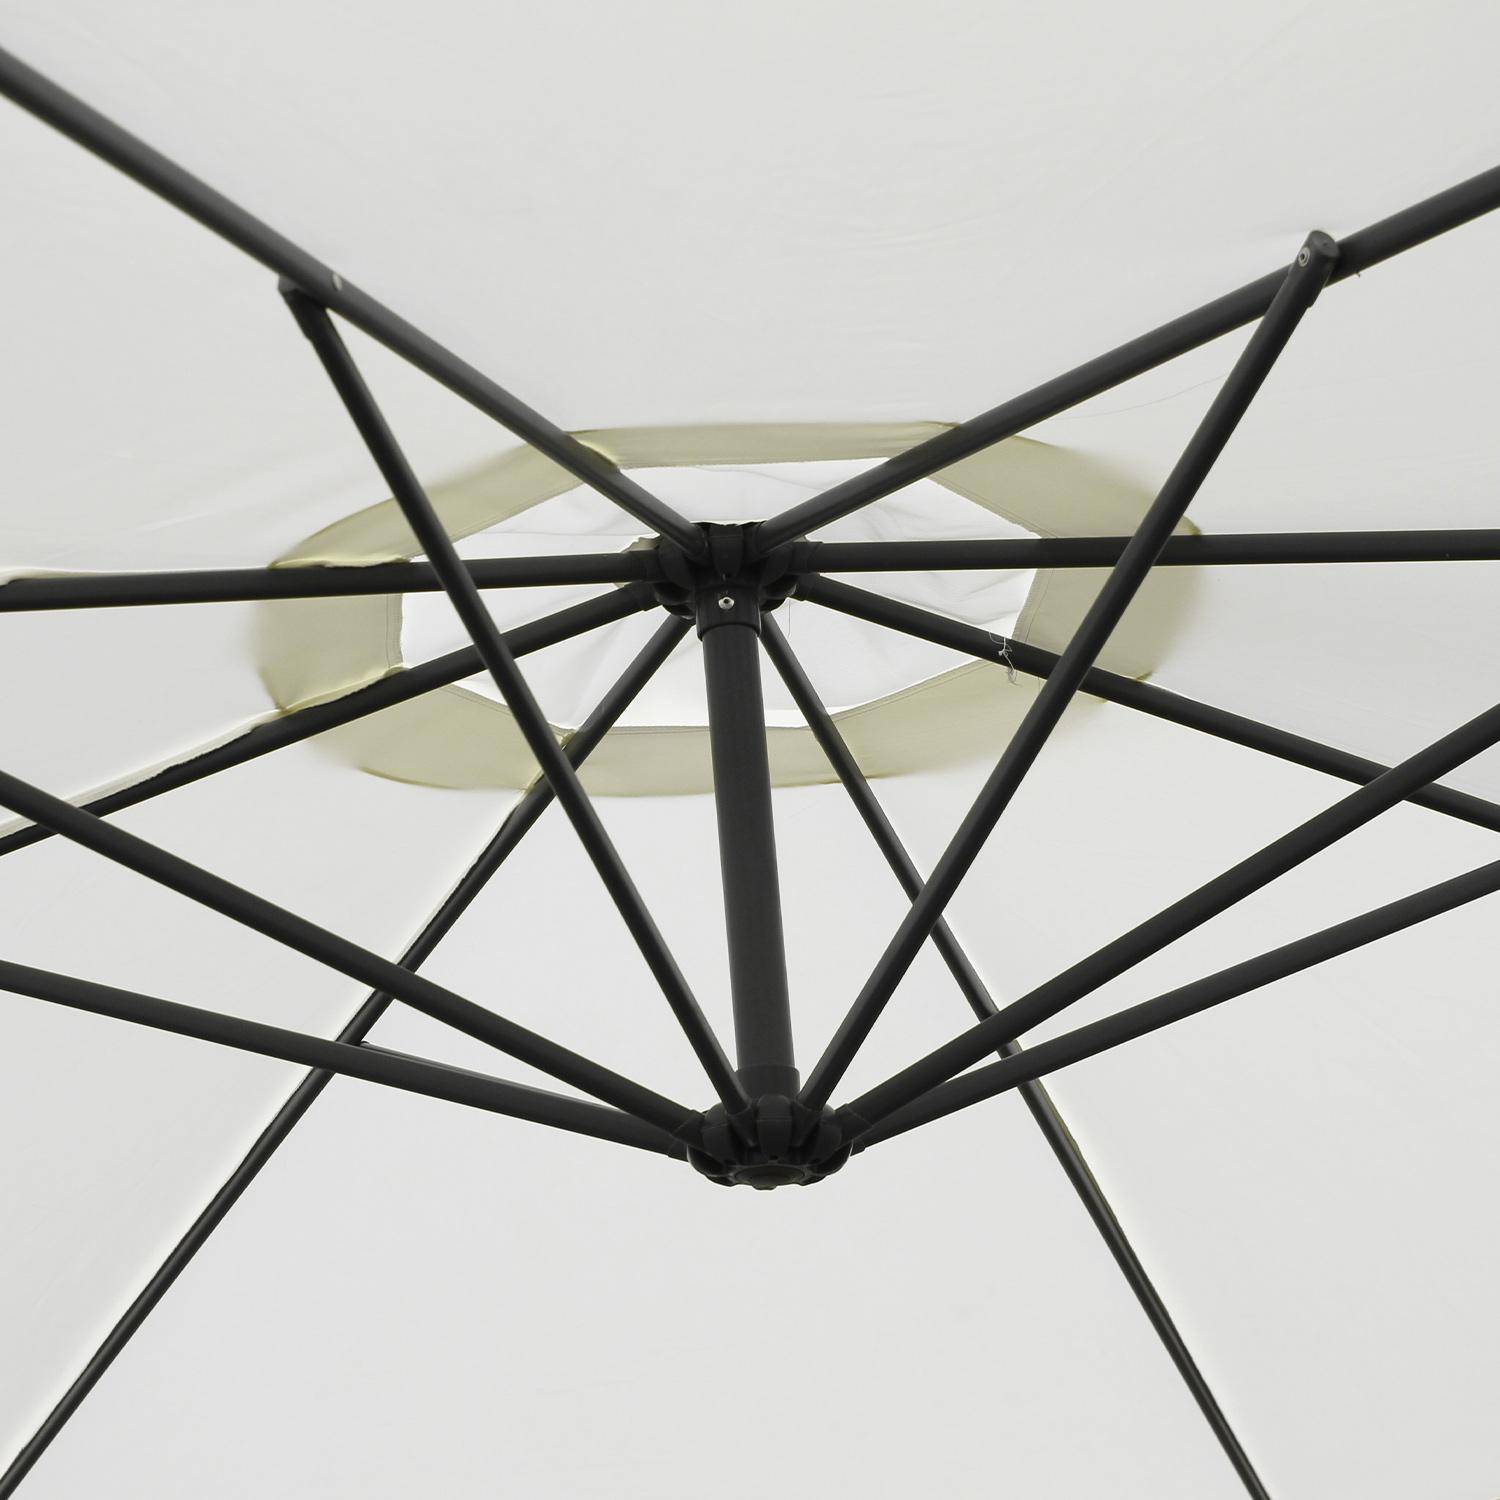 Ombrellone offset Ø350cm - Hardelot - Colore ecrù, struttura antracite, manovella a scomparsa.,sweeek,Photo5